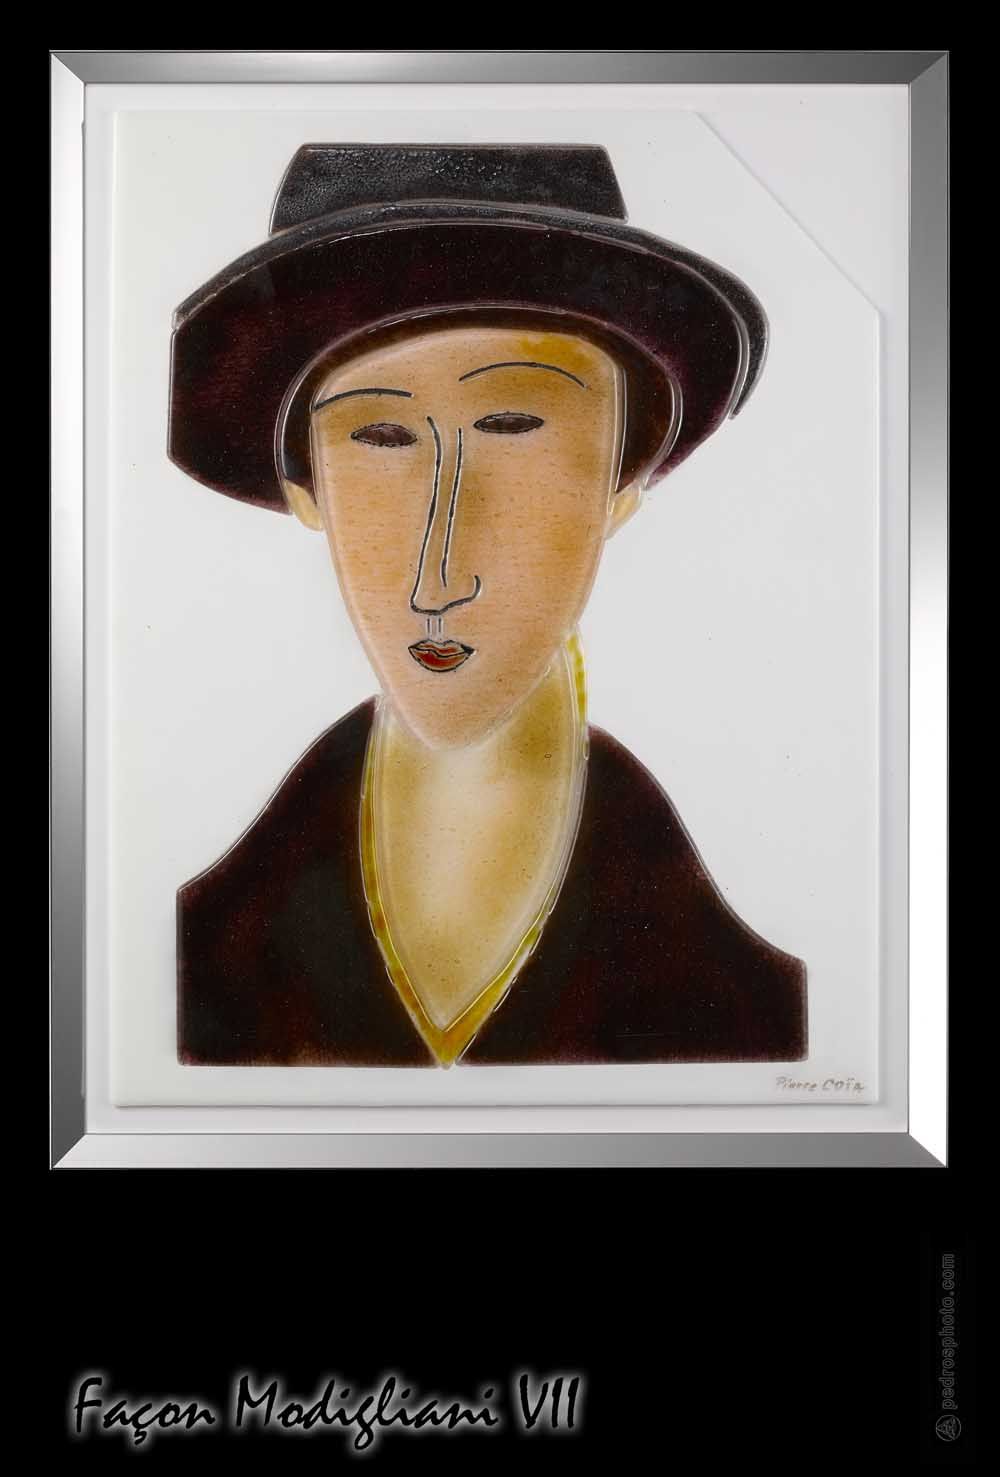 Façon Modigliani VII | Oeuvre Pierre Coia